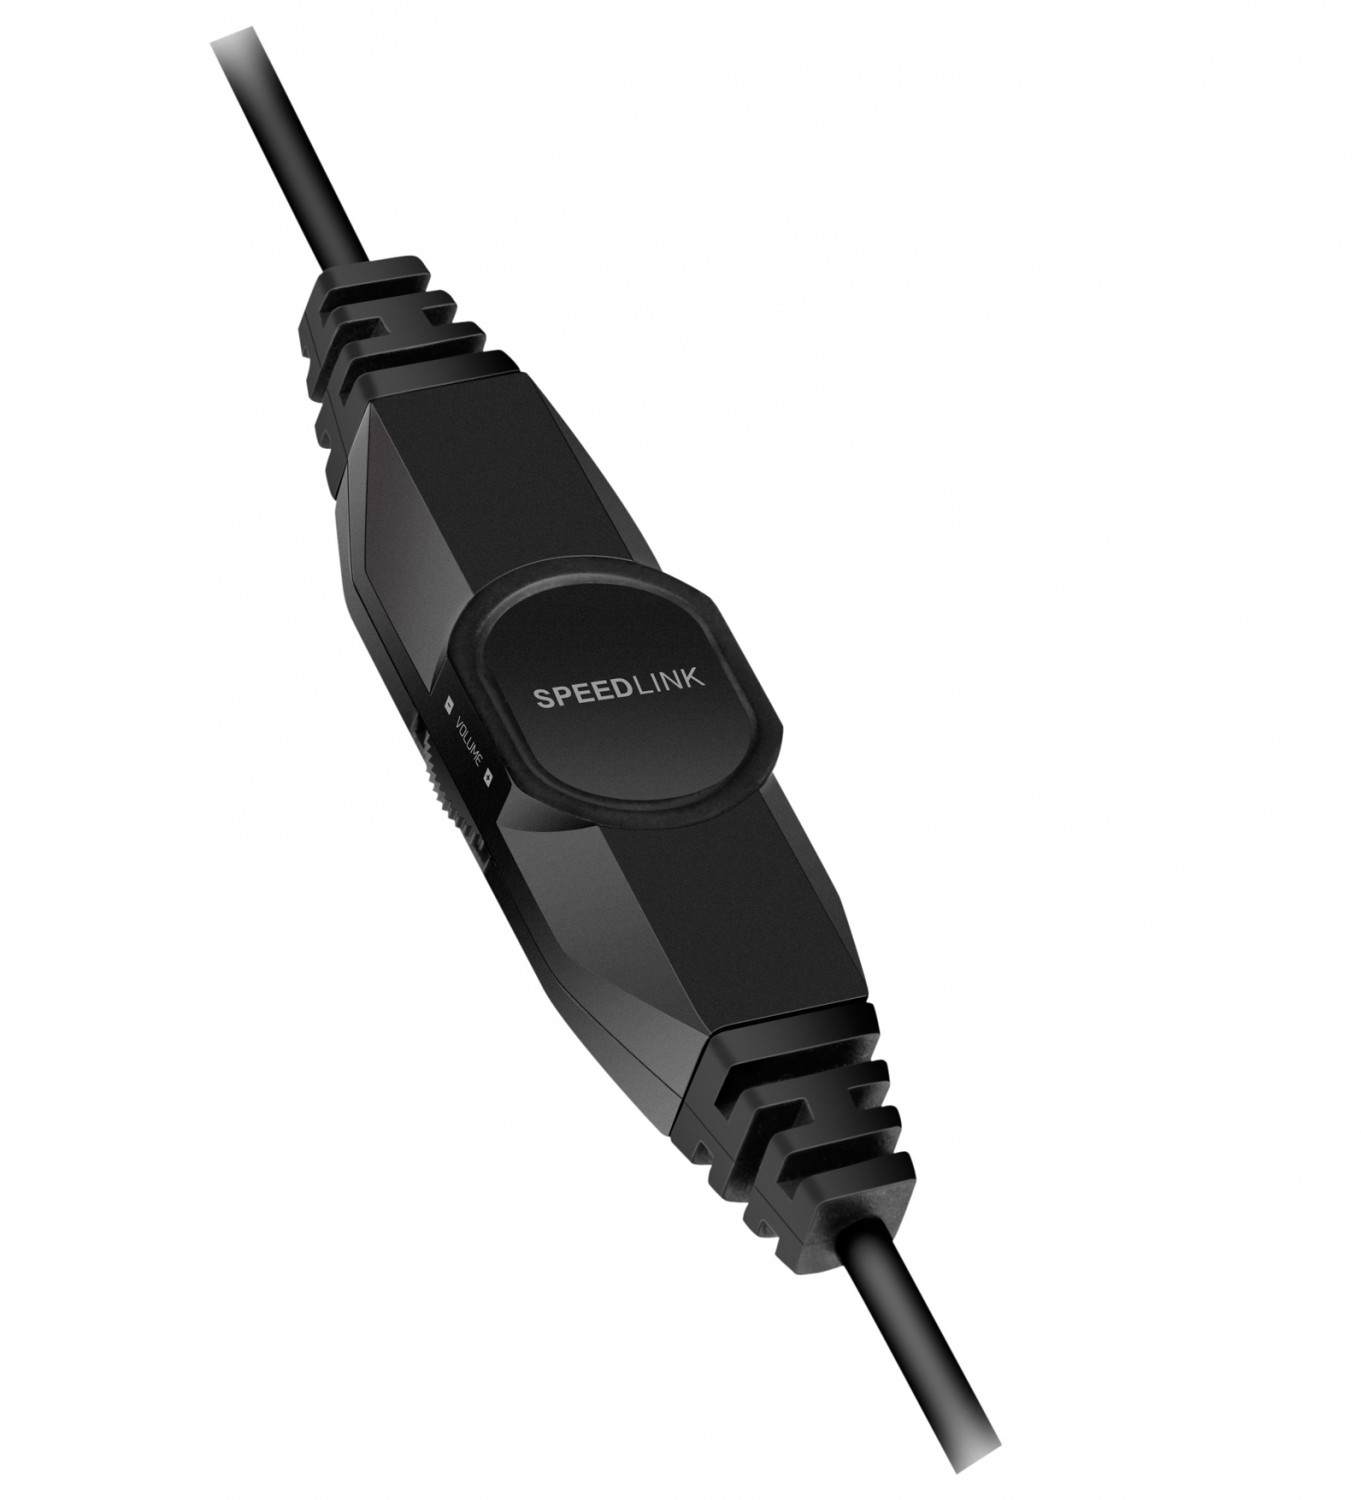 Kopfhörer Hifi Speedlink Coniux im Test, Bild 2